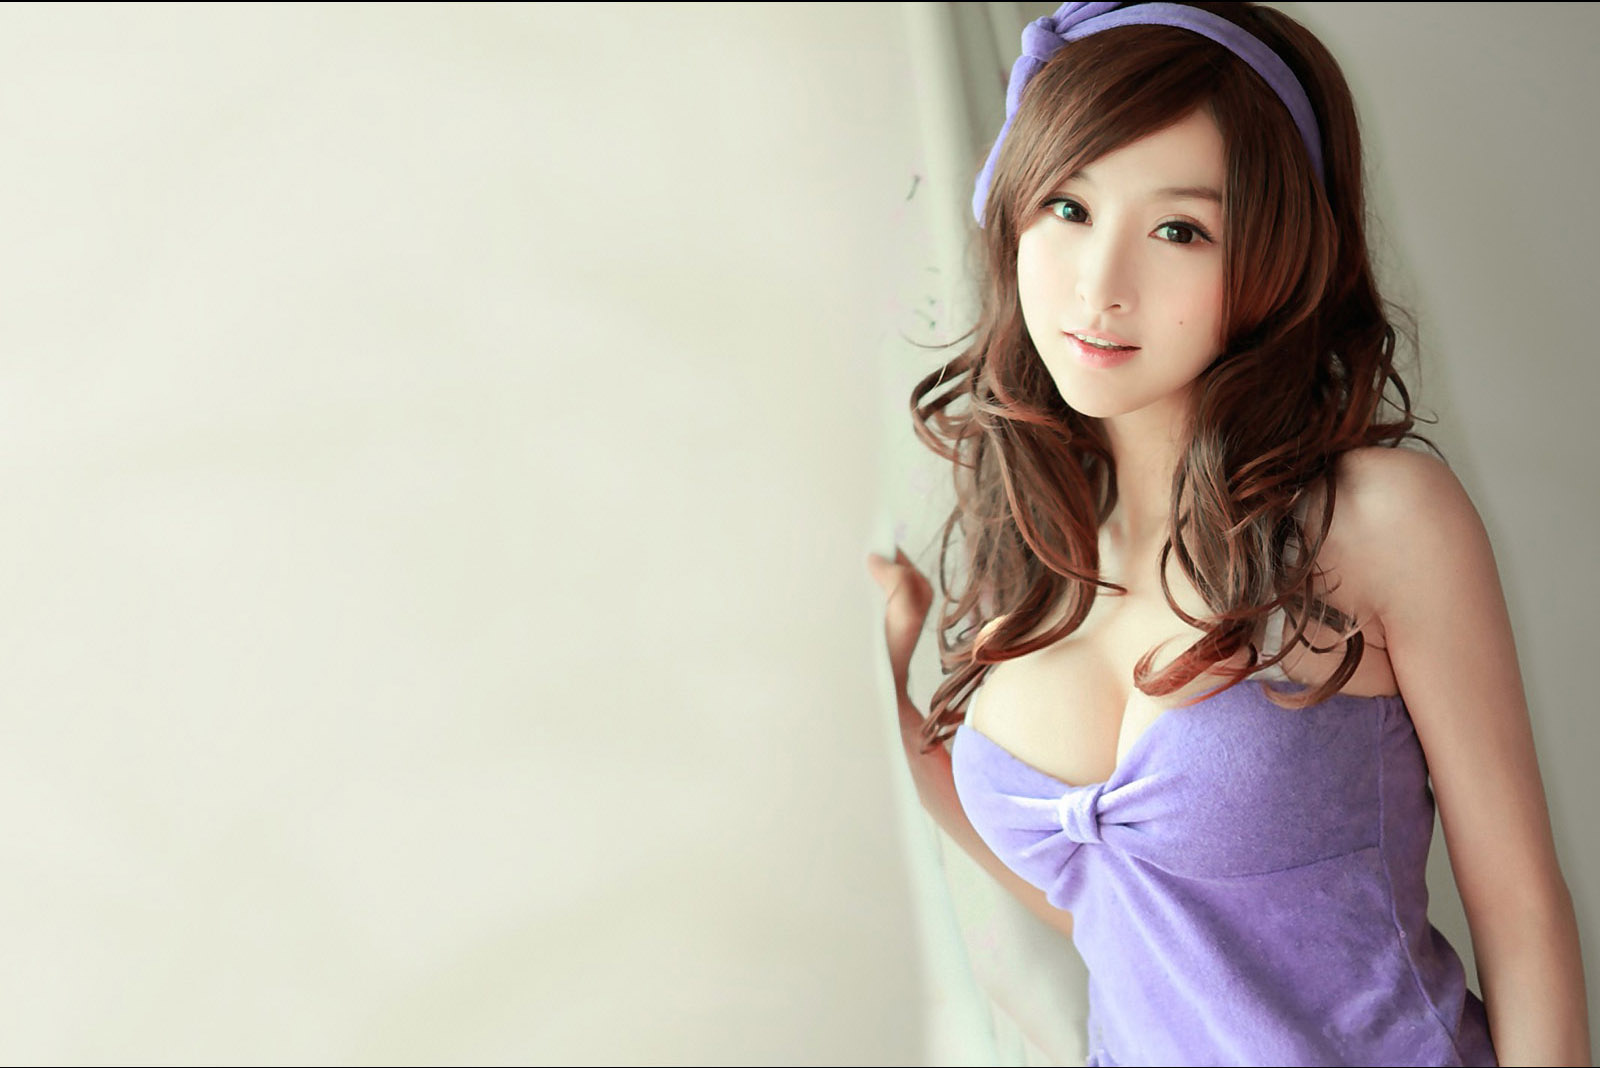 http://2.bp.blogspot.com/-FbRARe29SDg/TcRFvAWdVrI/AAAAAAAABGc/aooOr6NFBPw/s1600/asian+cute+girl+wallpaper+%25286%2529.jpg